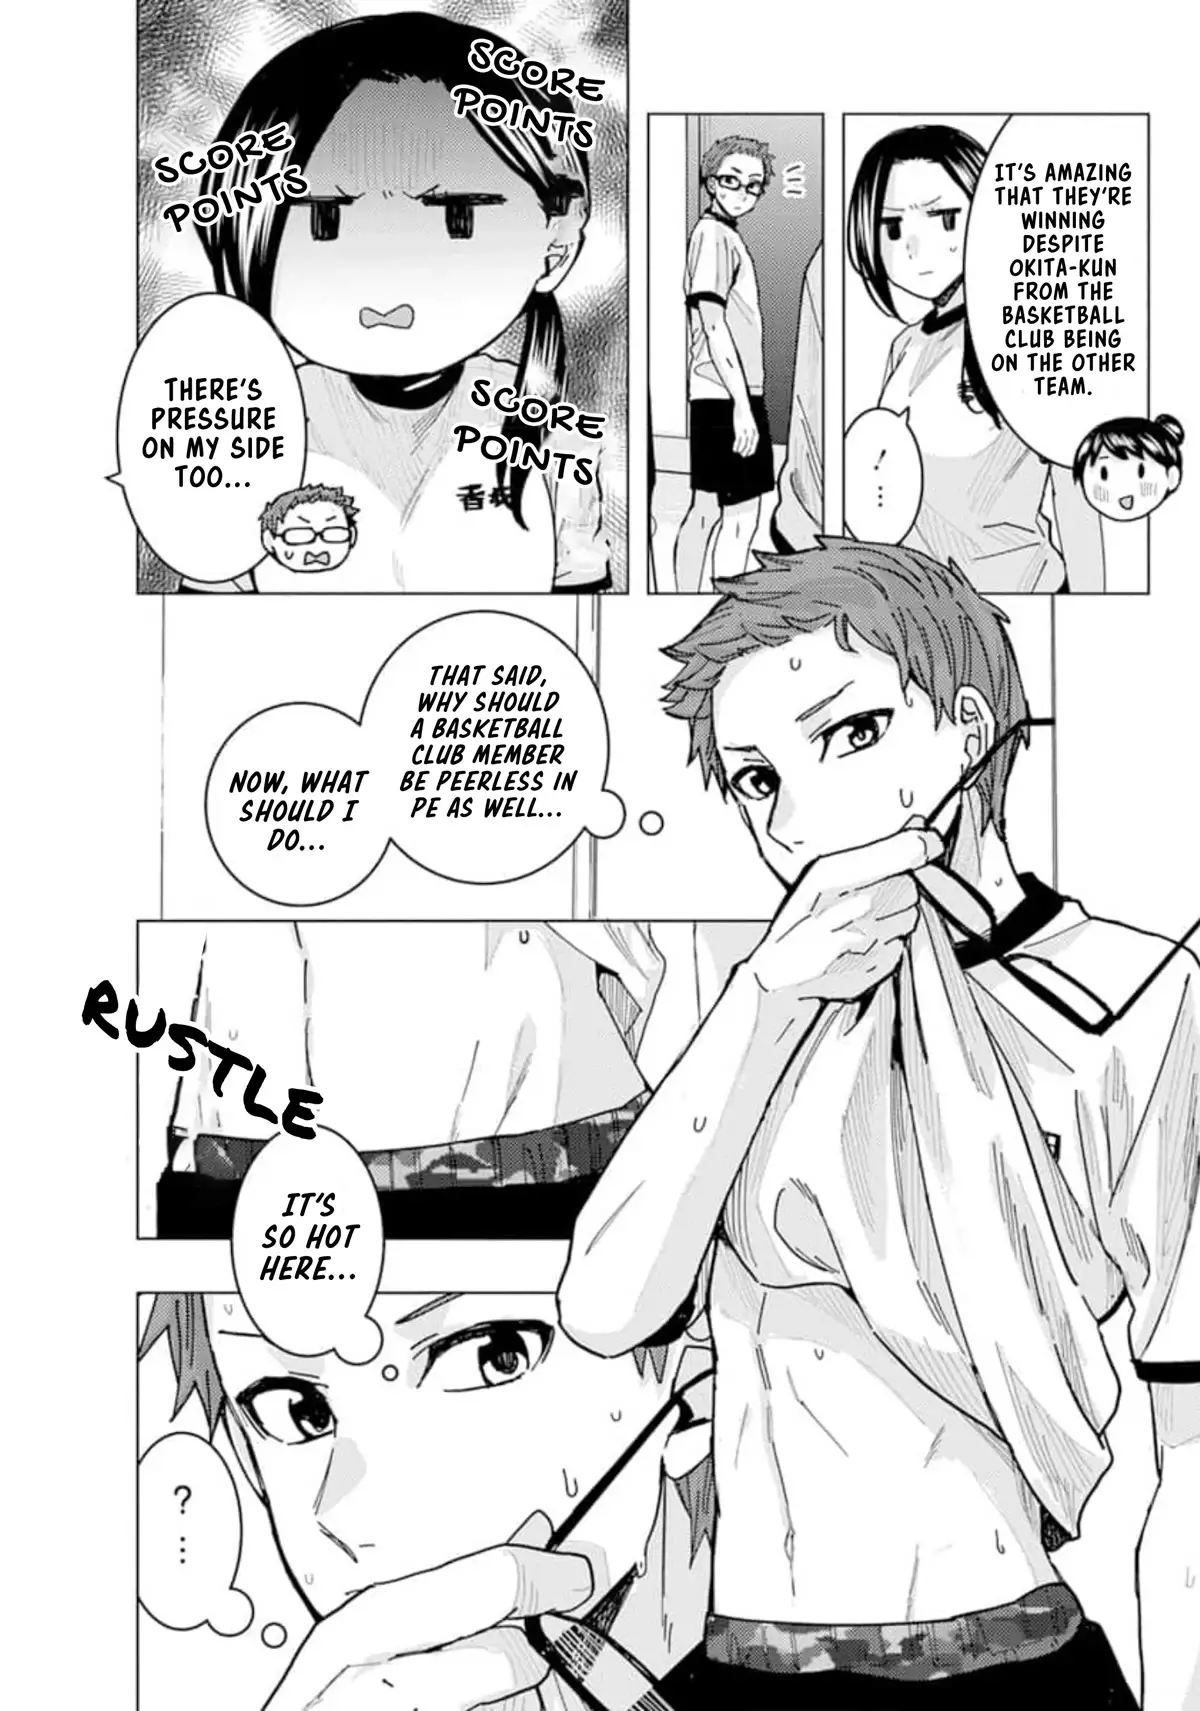 "nobukuni-San" Does She Like Me? - 22 page 12-4a948f4c